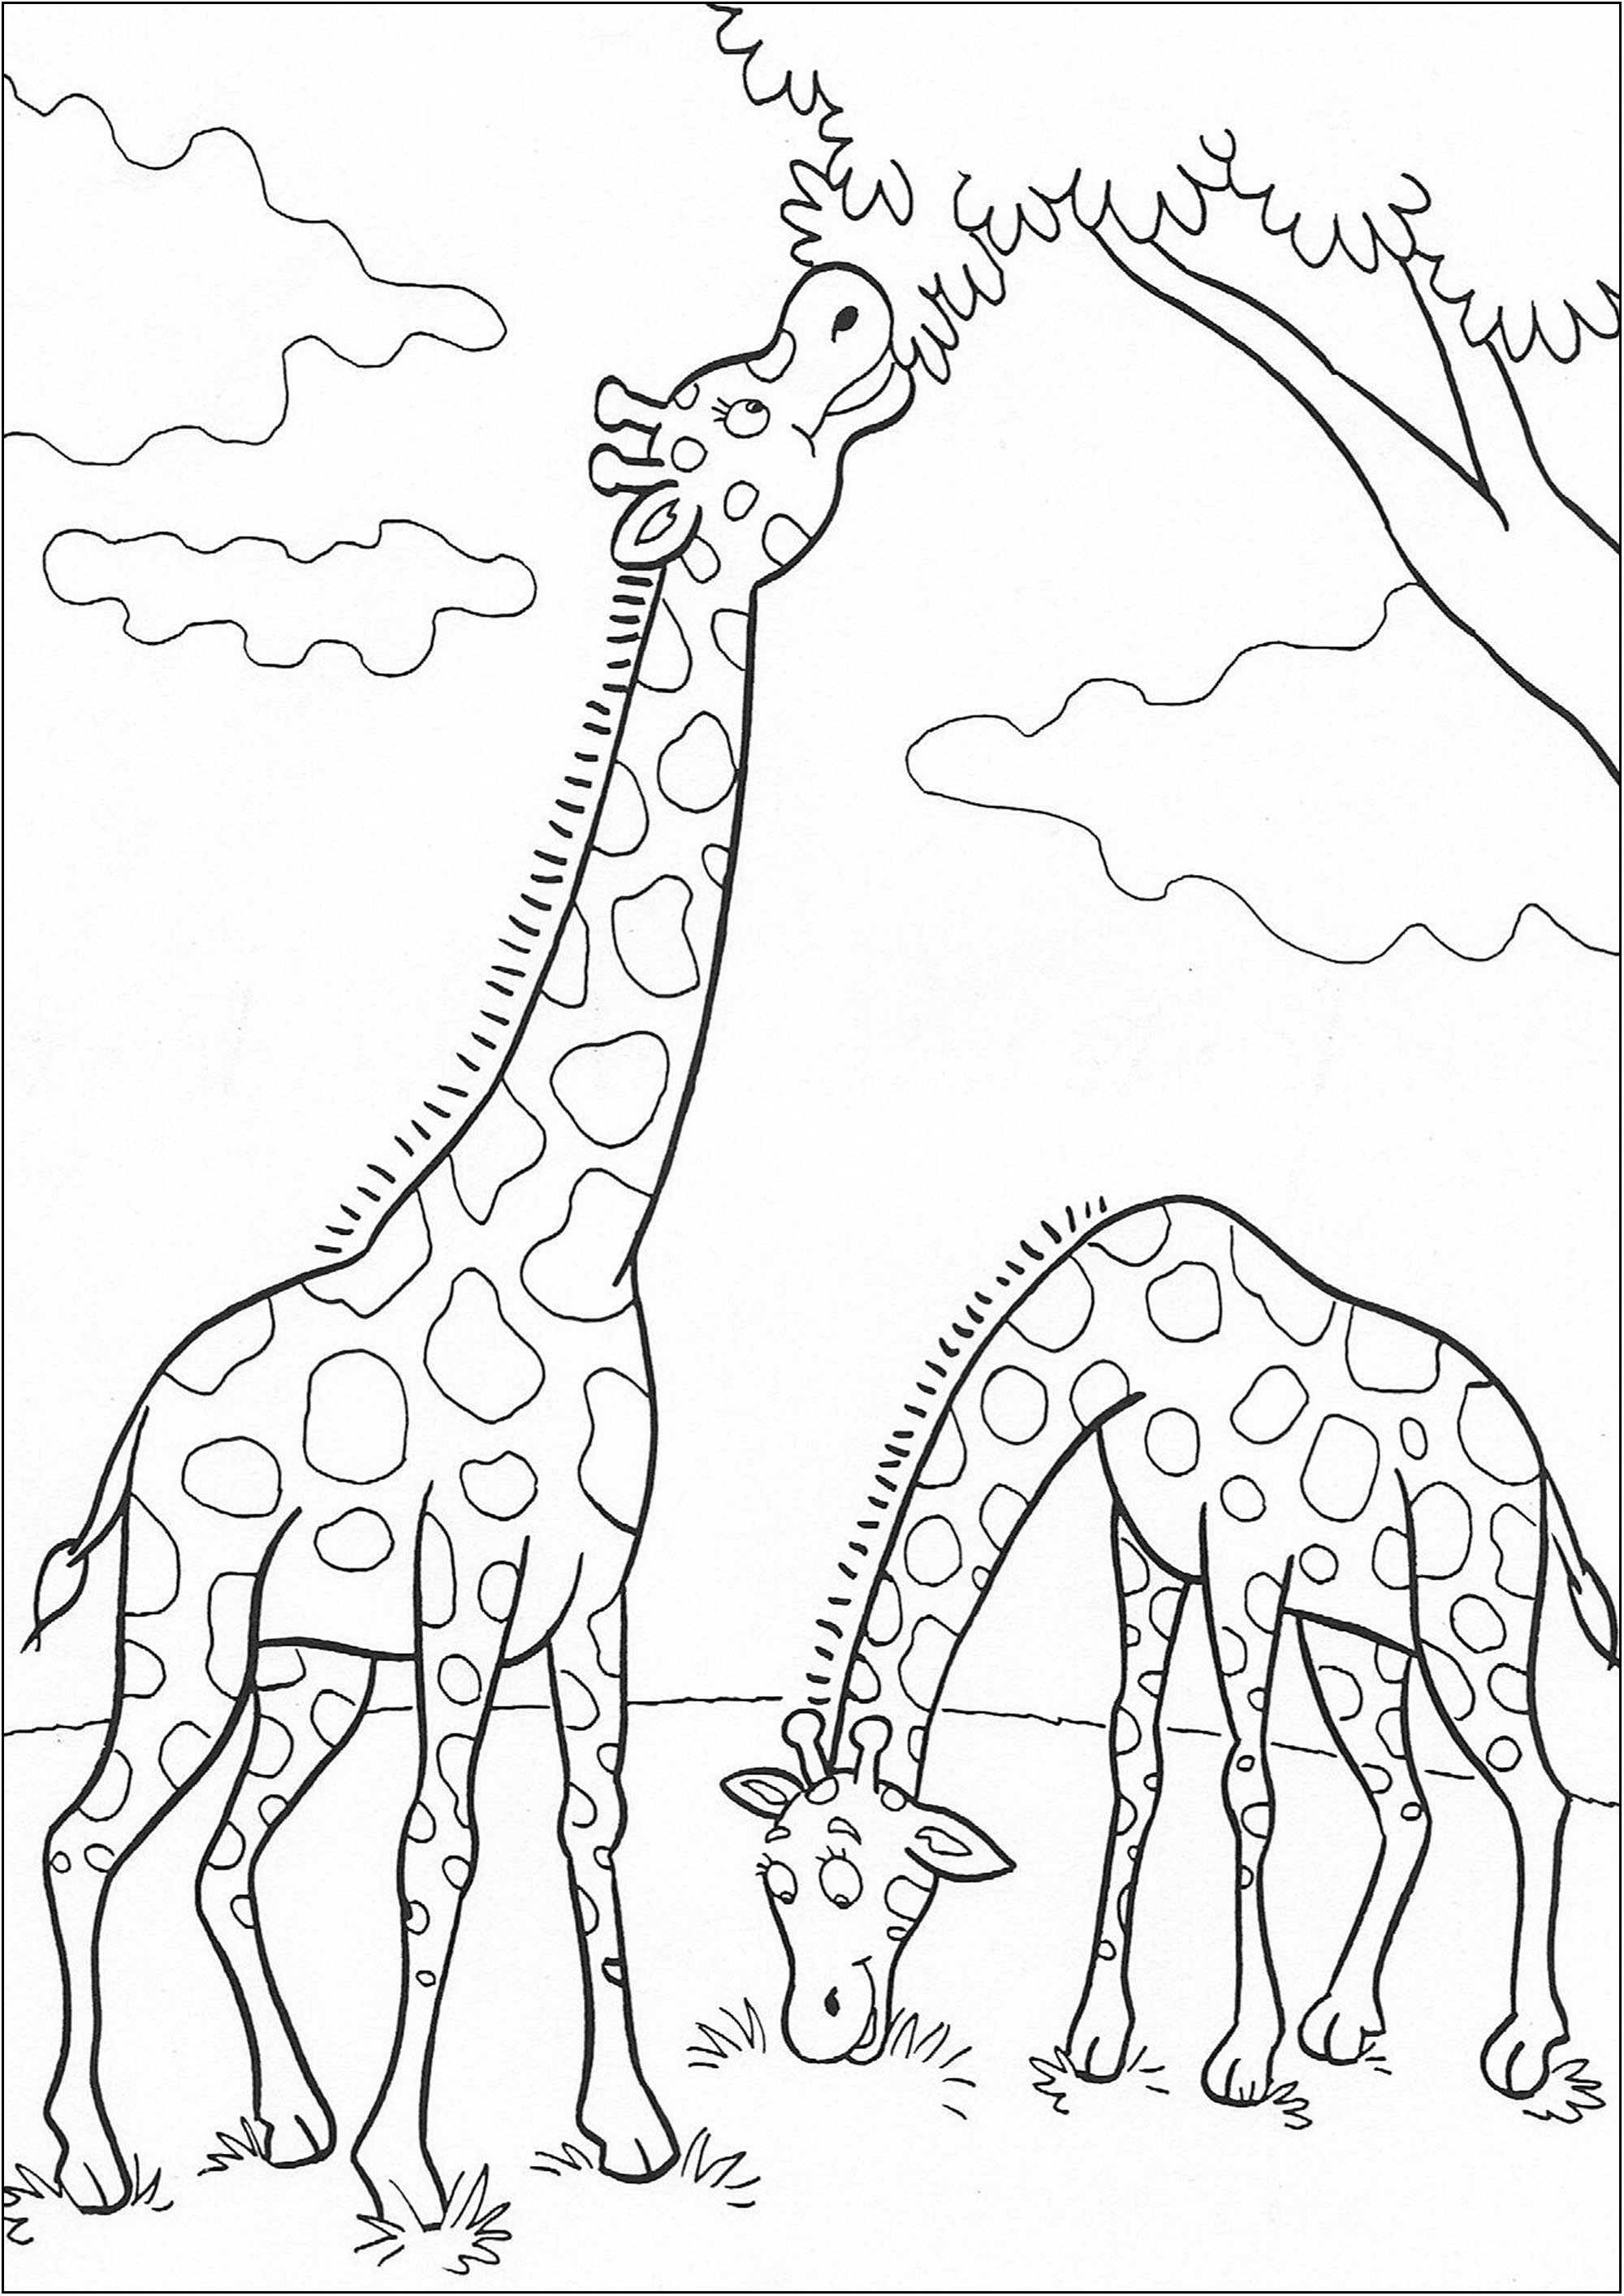 Duas Girafas a meio de uma refeição. Uma página para colorir bonita e simples com pormenores divertidos para colorir